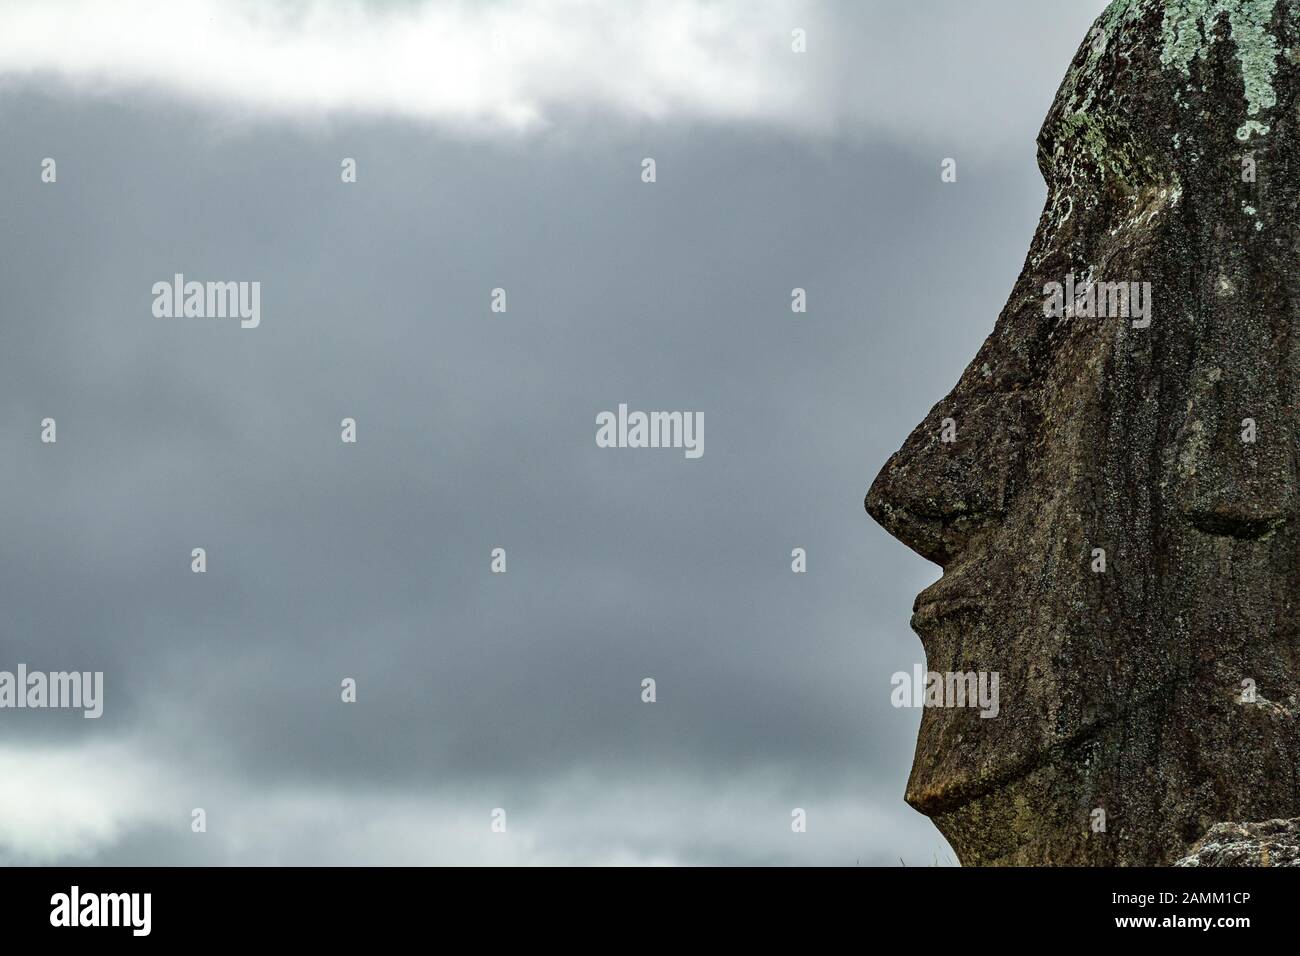 Vue rapprochée de la tête Moai contre le ciel nuageux Banque D'Images